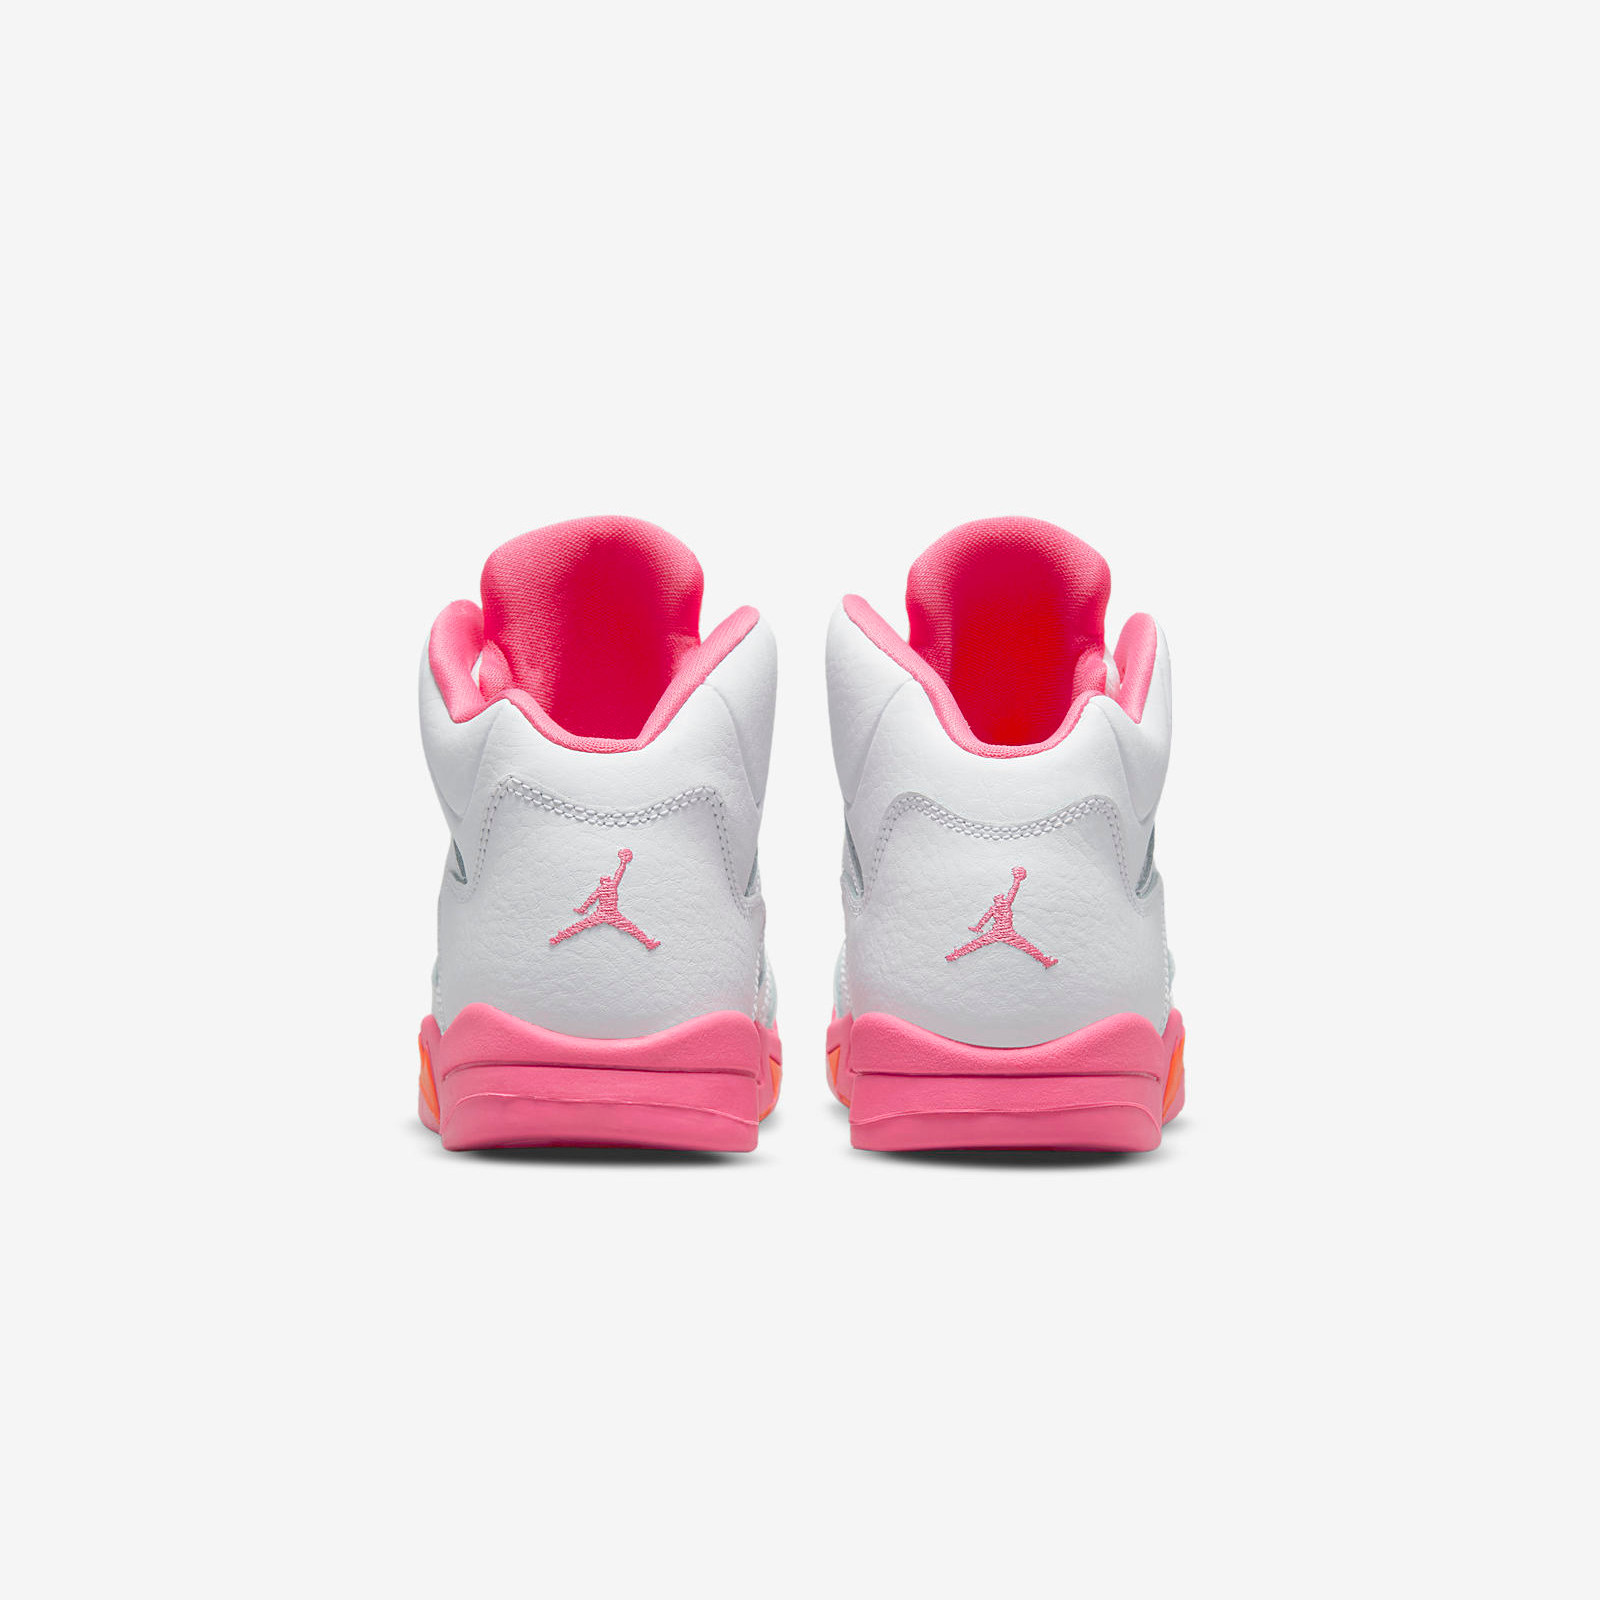 Air Jordan 5 Retro GS
« Pinksicle »